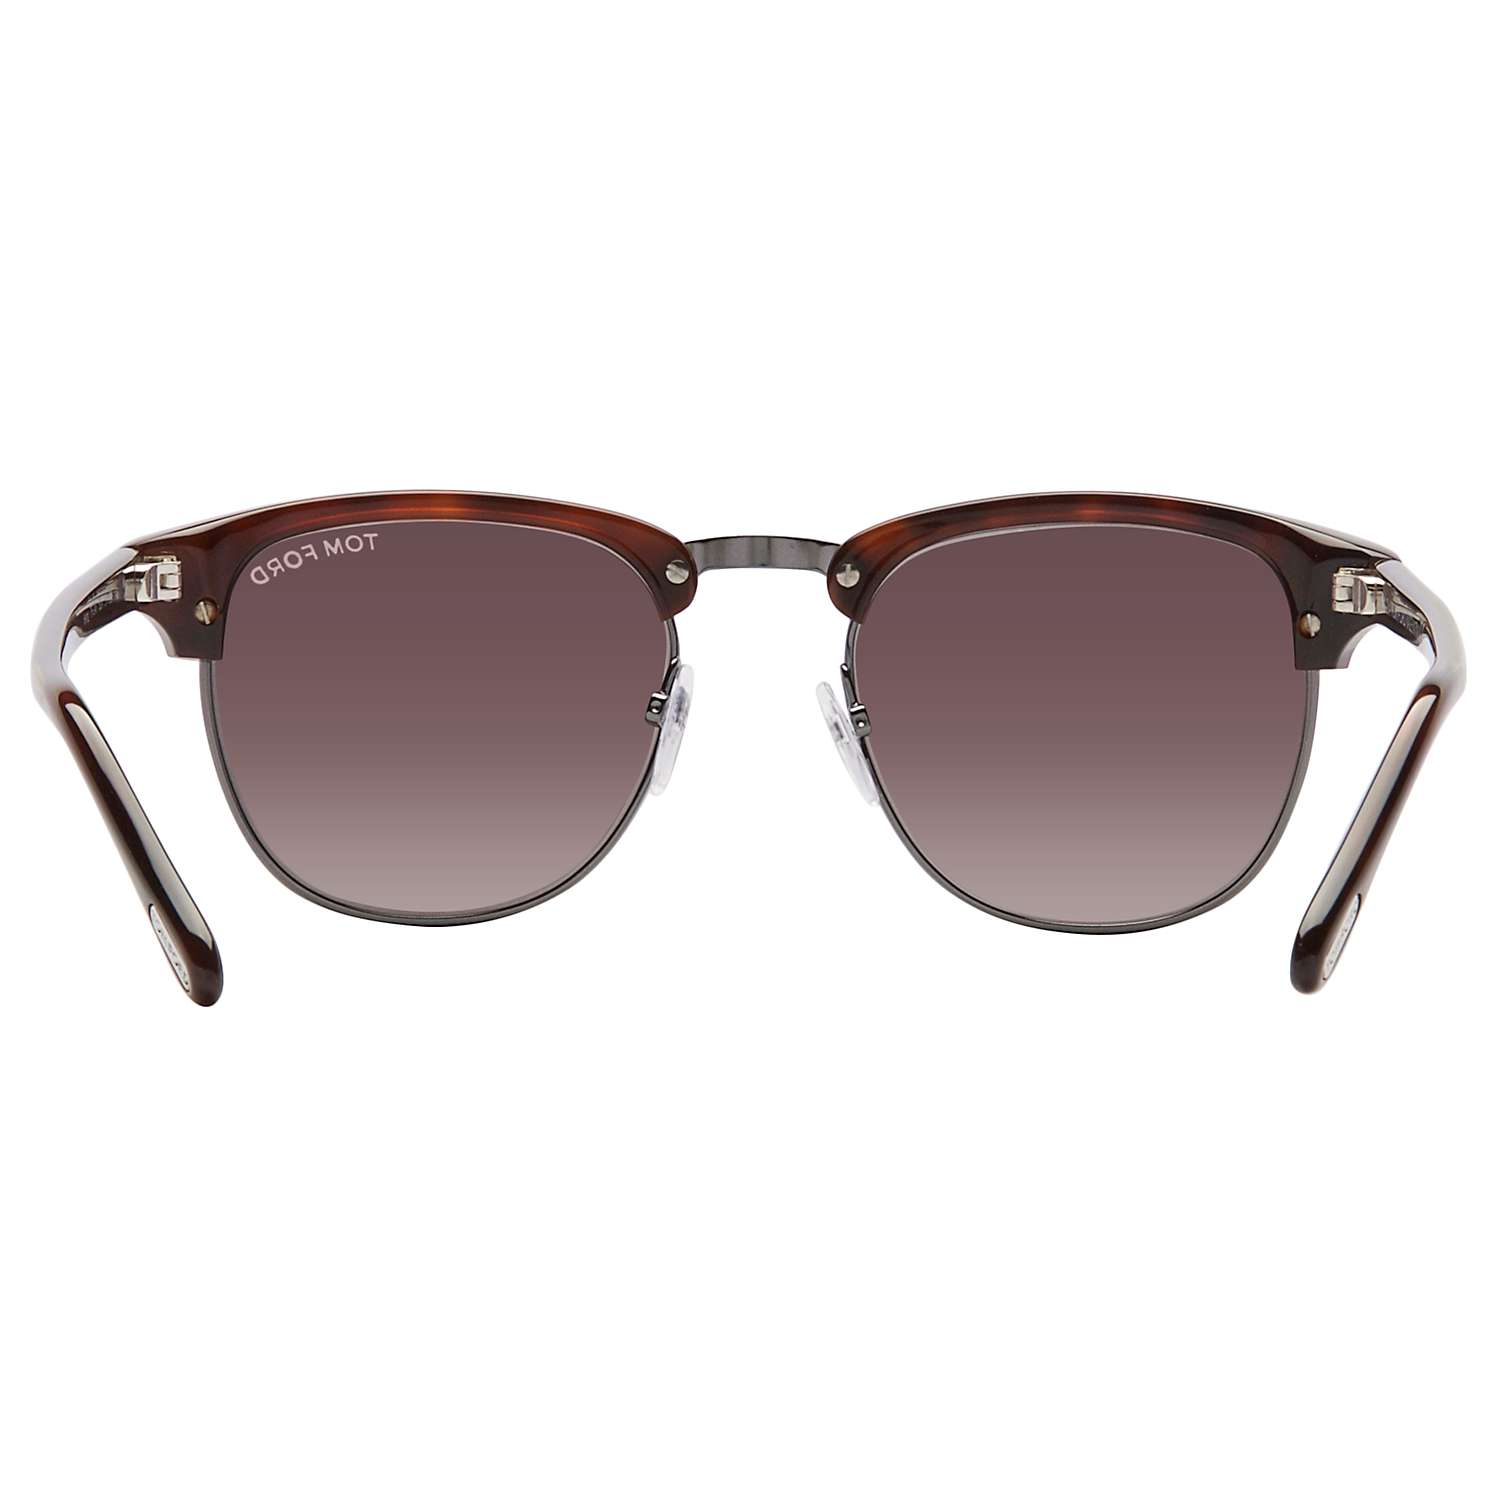 Buy TOM FORD FT0248 Henry Sunglasses, Tortoise Online at johnlewis.com